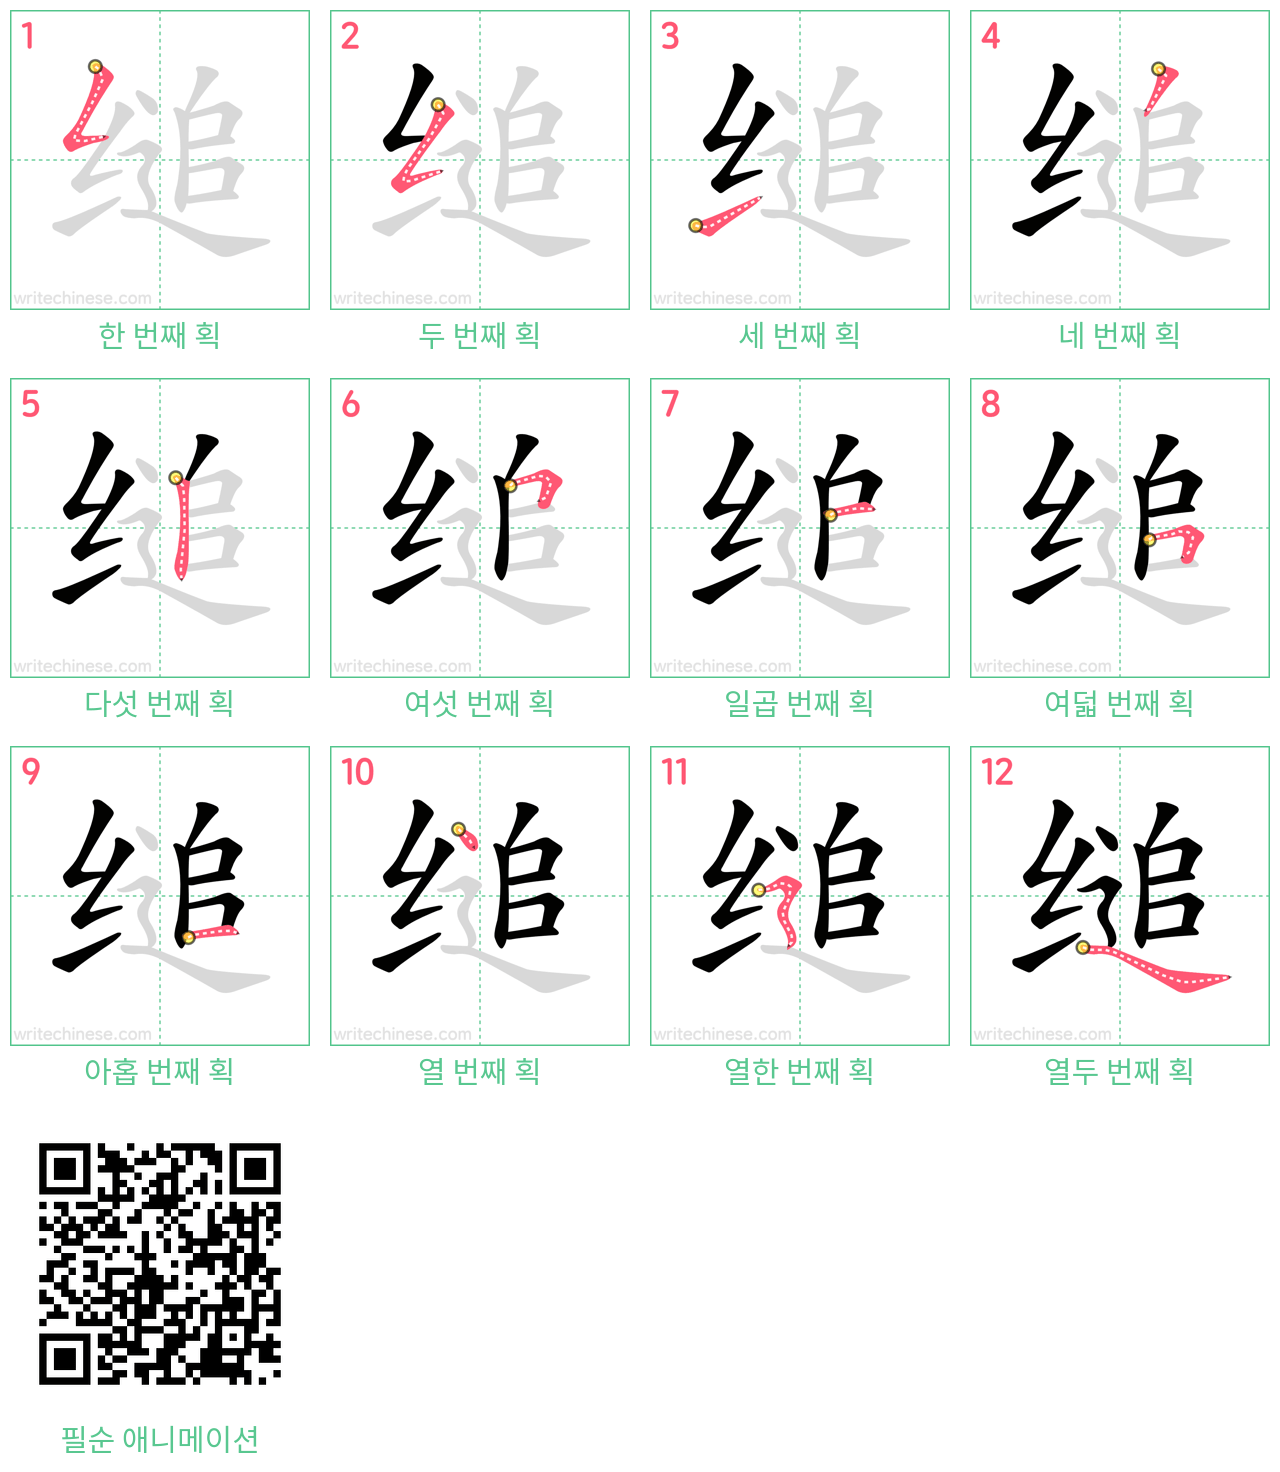 缒 step-by-step stroke order diagrams